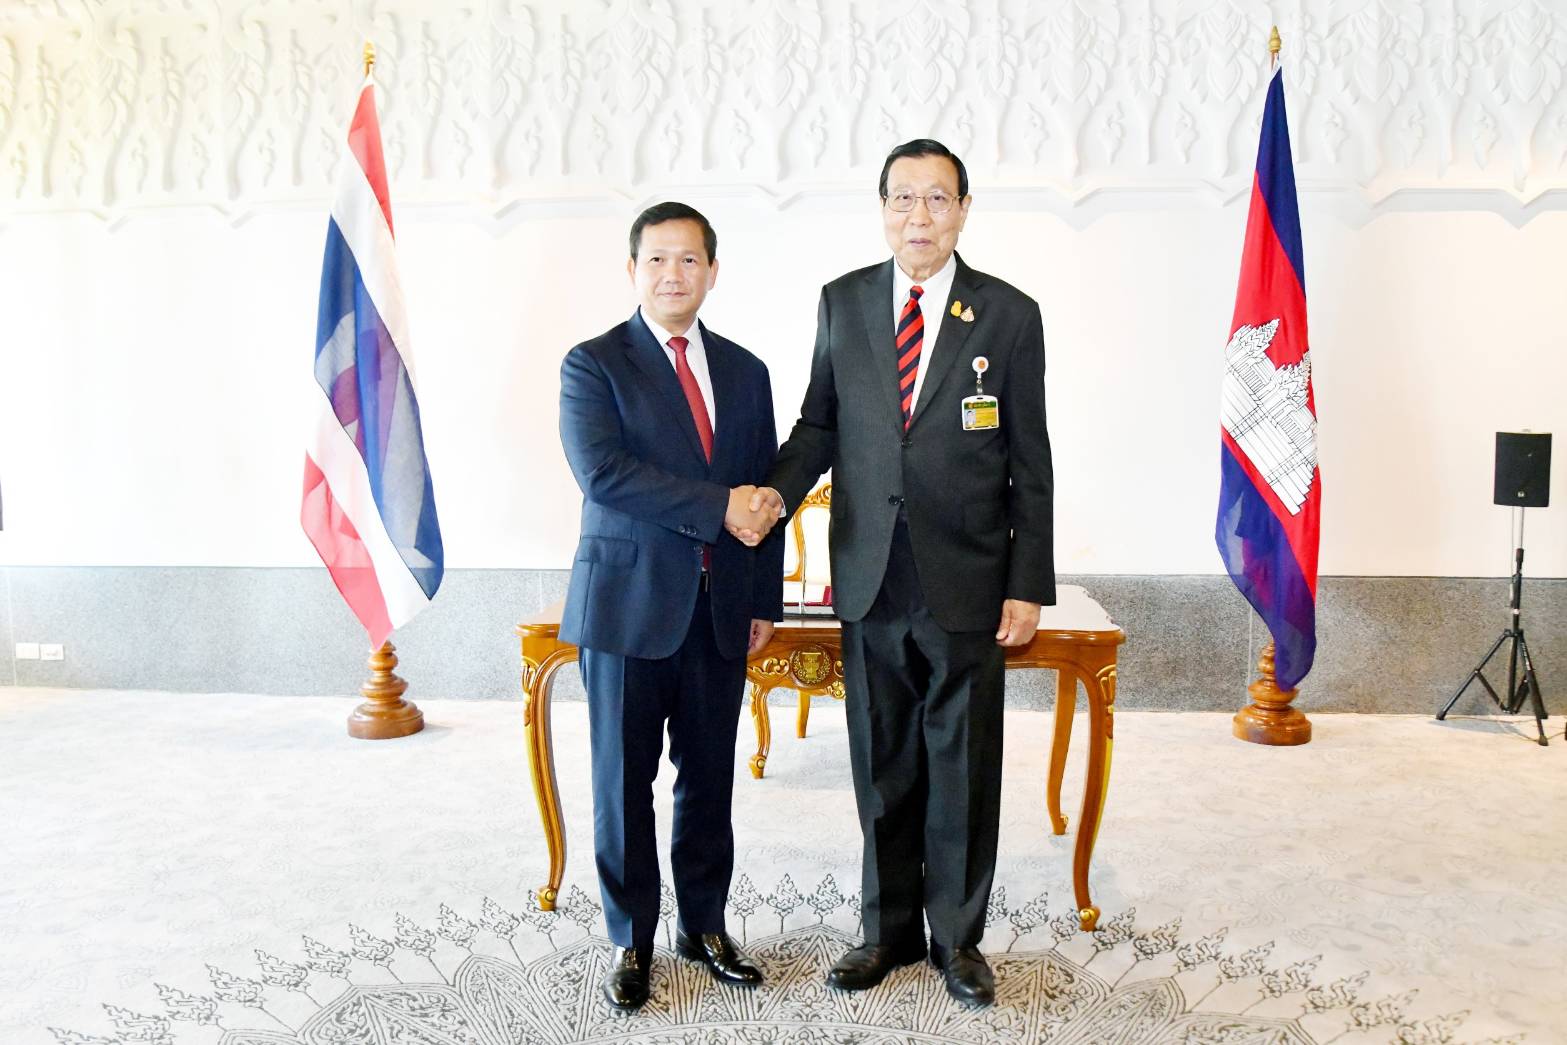 ประธานวุฒิสภาให้การรับรองนายกรัฐมนตรีแห่งราชอาณาจักรกัมพูชา  ในโอกาสเดินทางเยือนไทยอย่างเป็นทางการ ในฐานะแขกของรัฐบาล เมื่อวันที่ ๗ กุมภาพันธ์ ๒๕๖๗